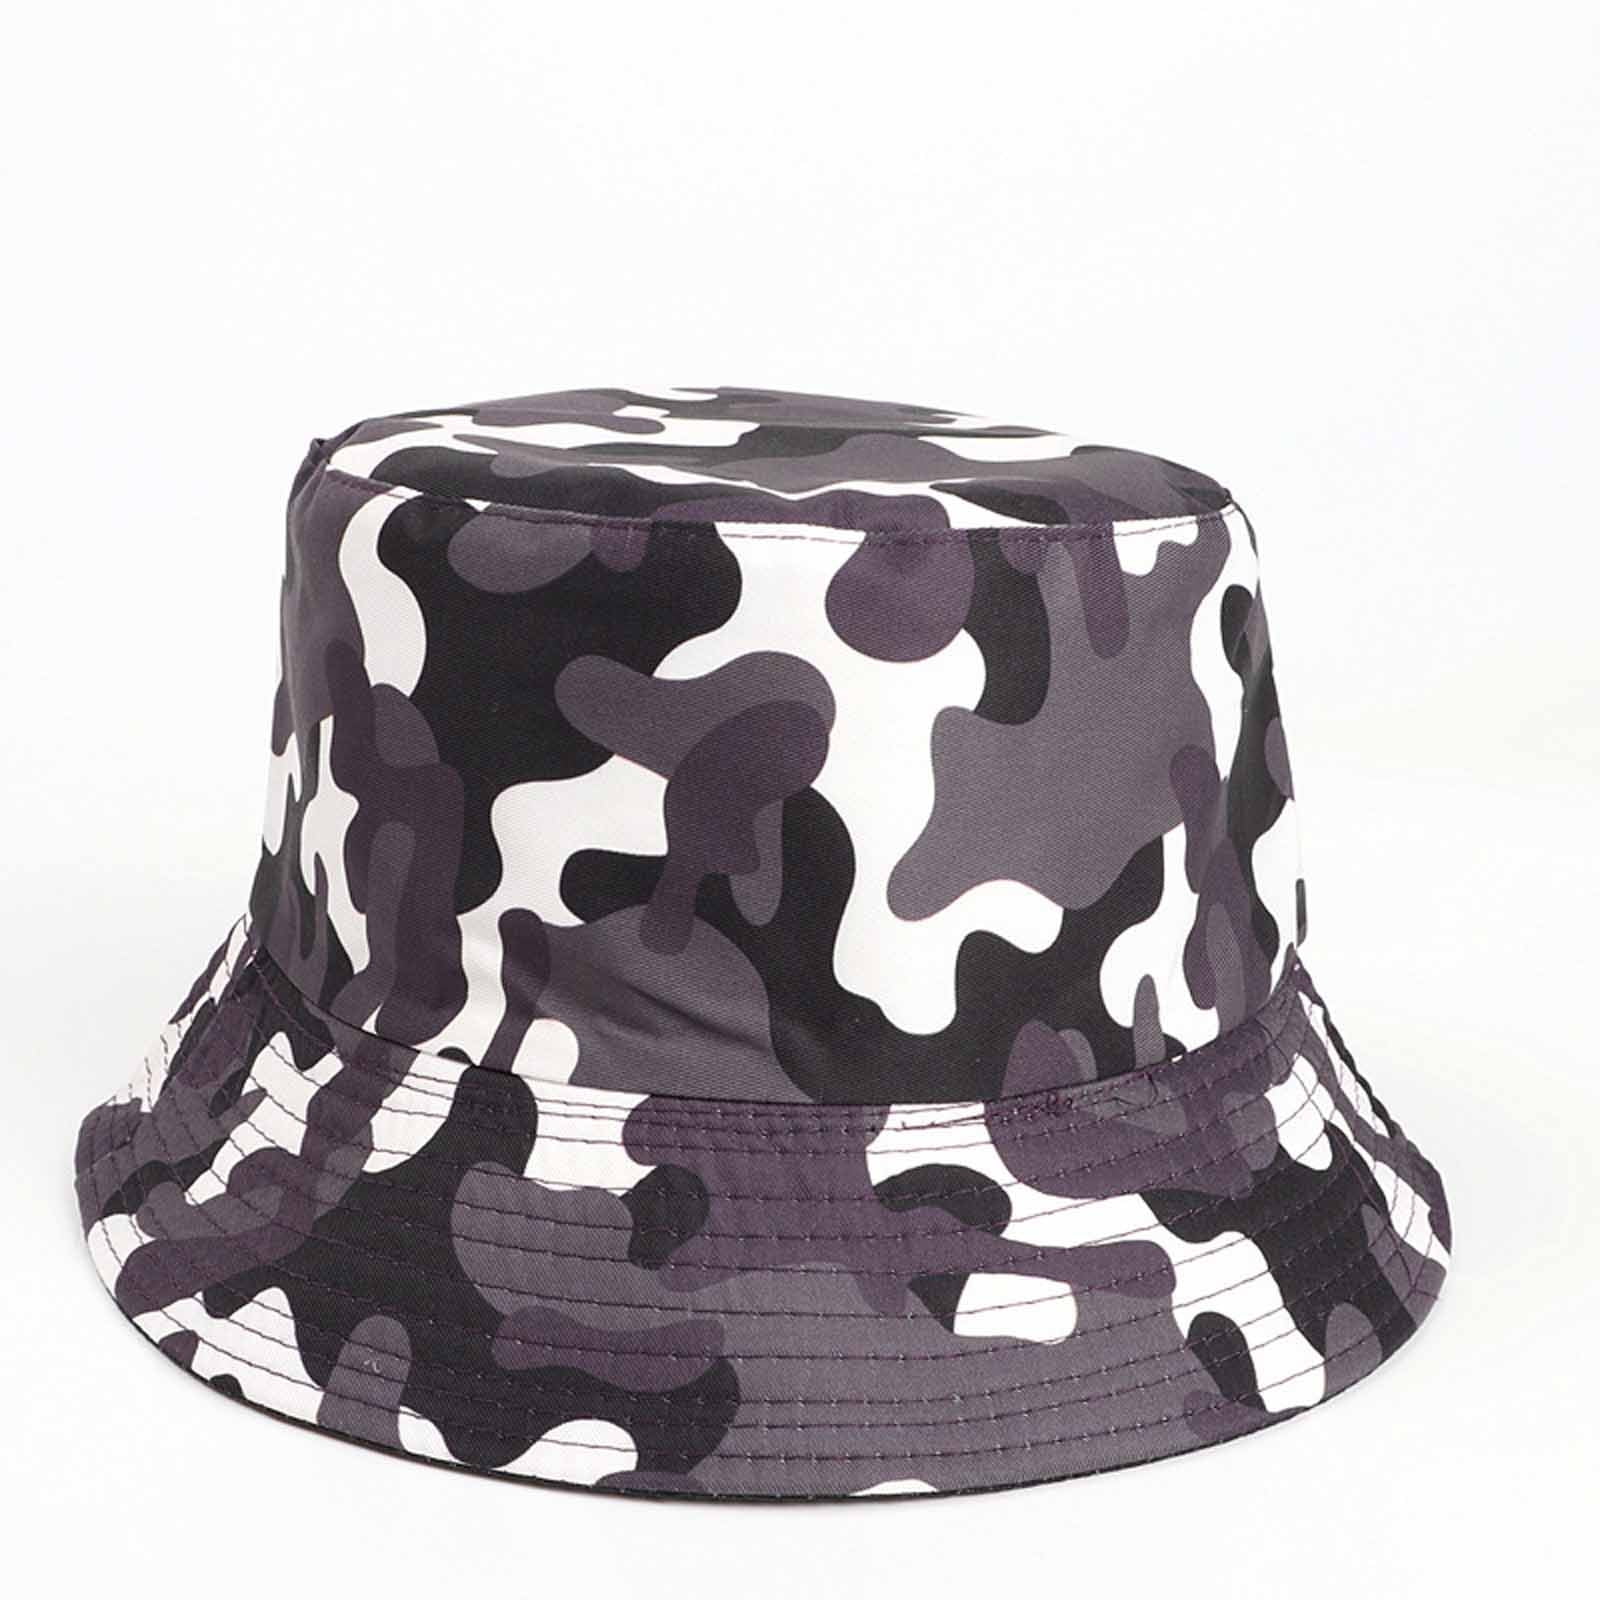 Xysaqa Bucket Hat for Men, Women, Teens, Girls - Reversible Bucket 